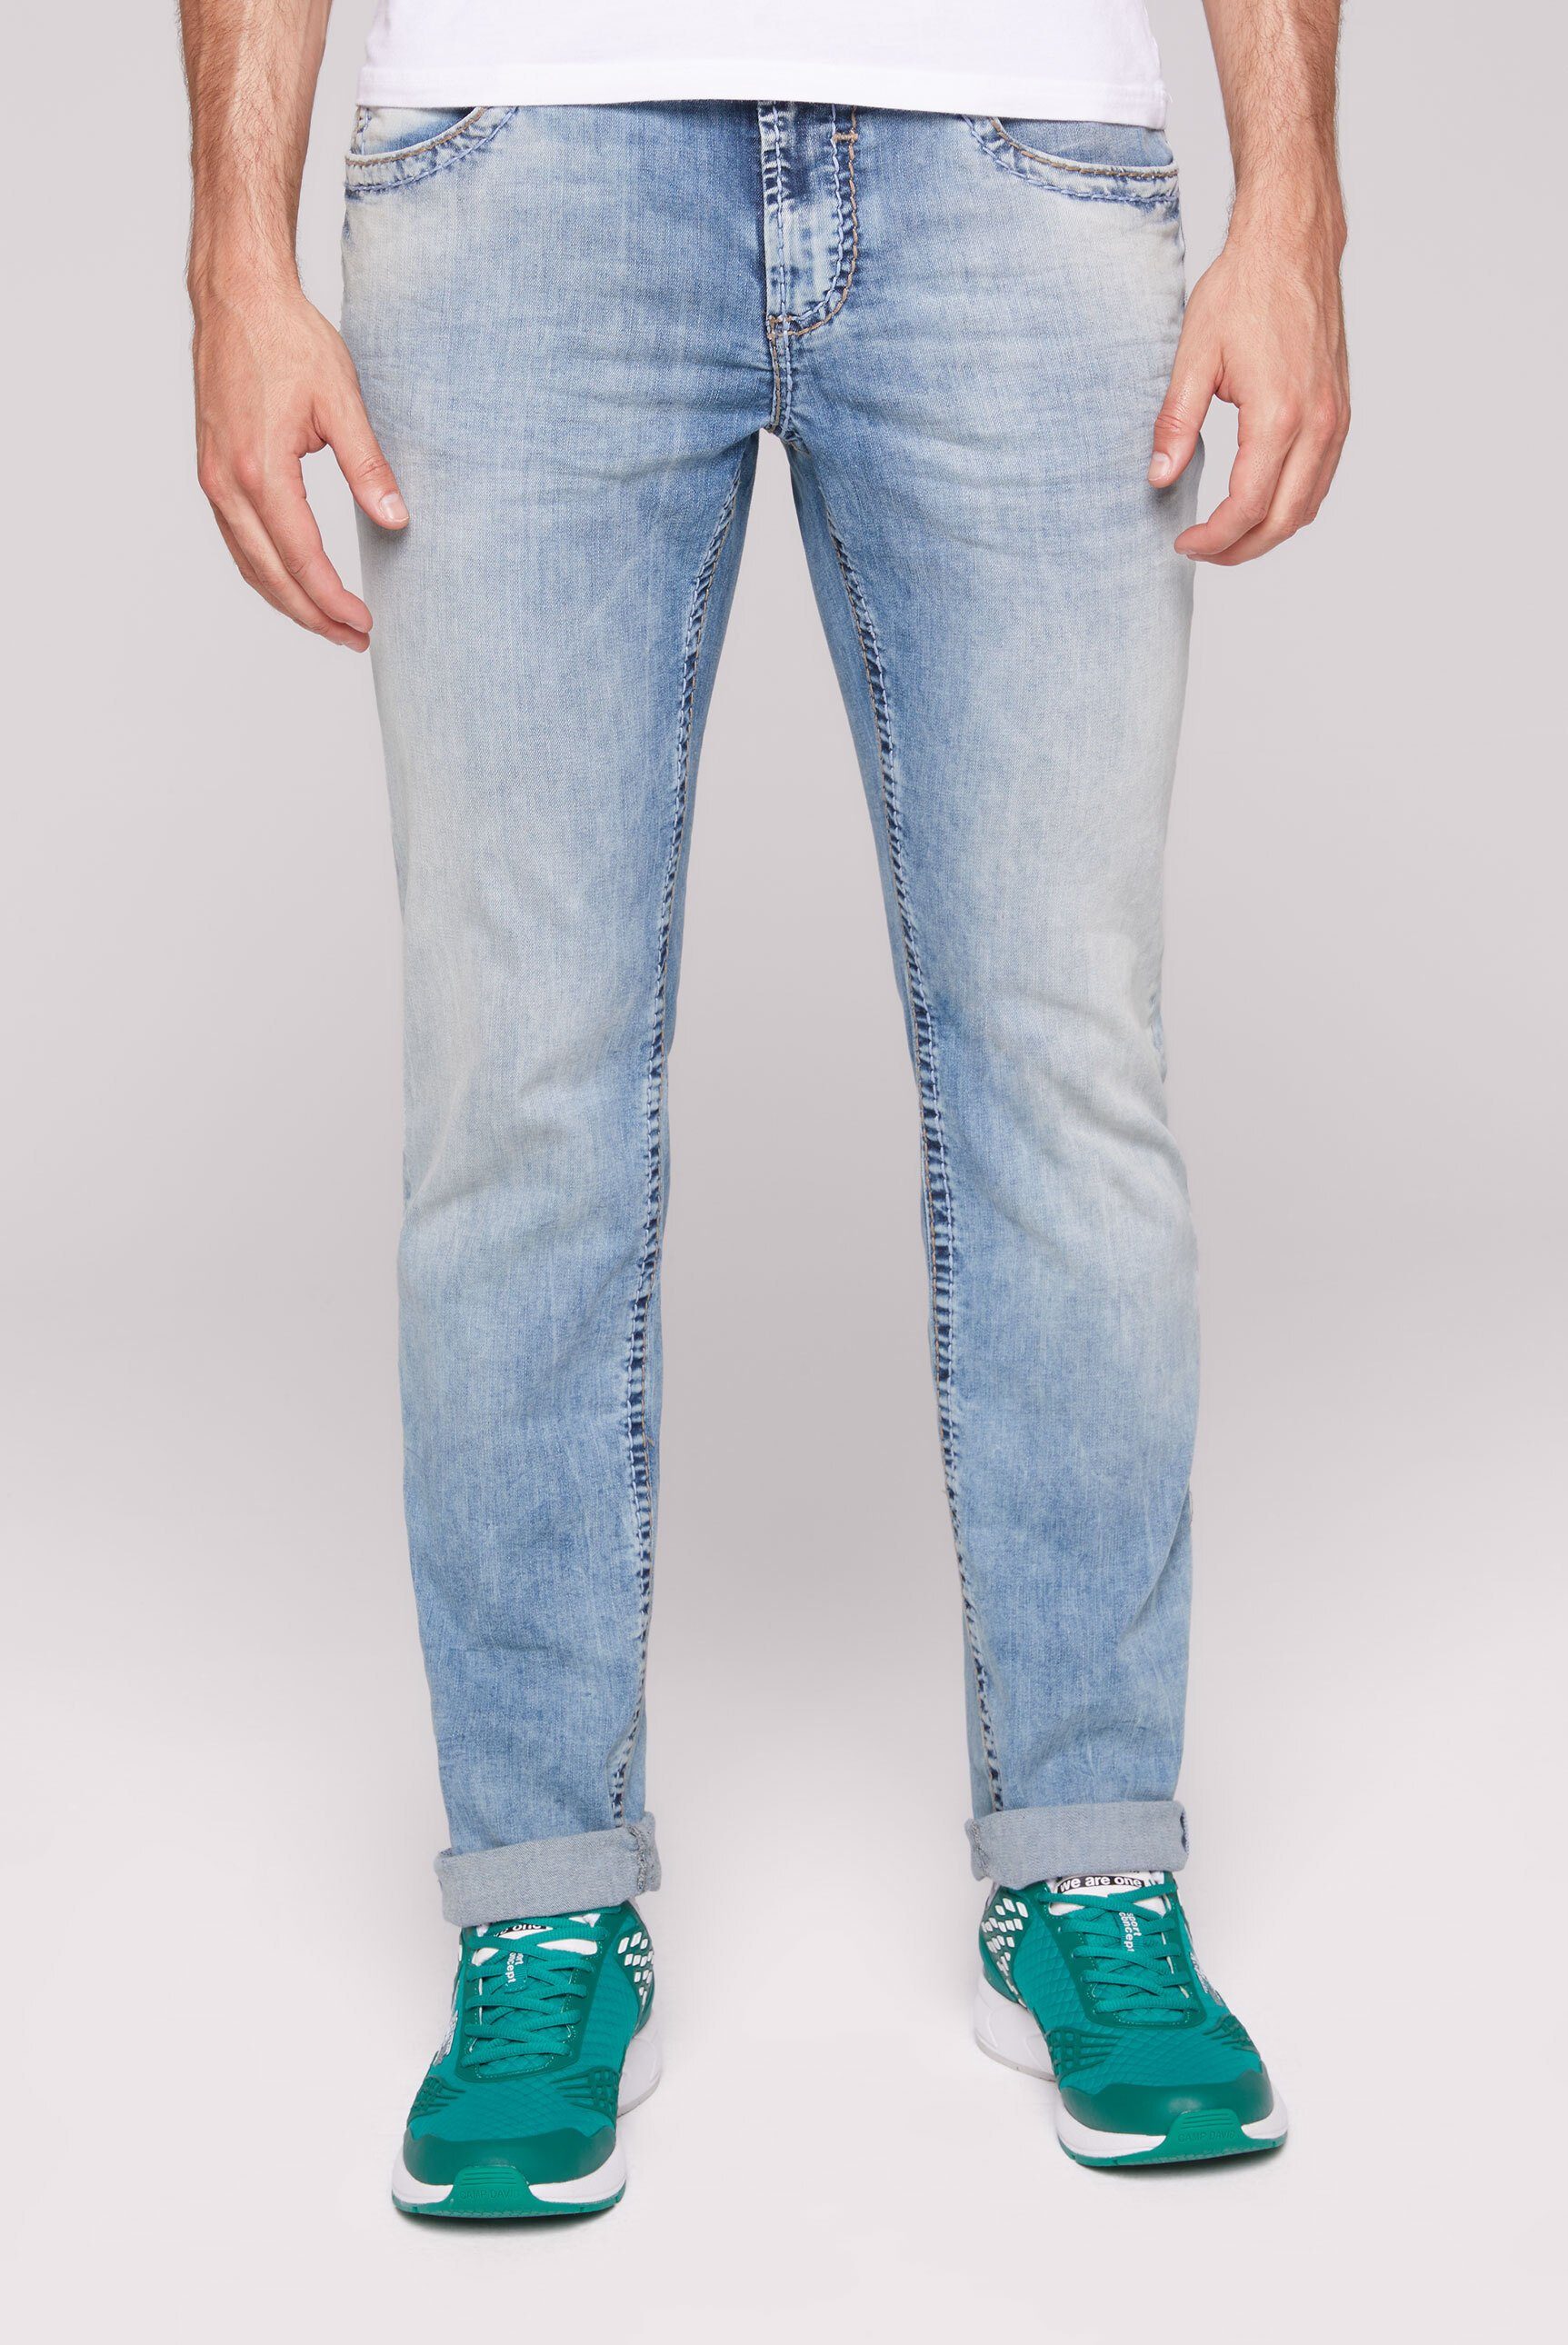 Camp David Herren Jeans online kaufen | OTTO